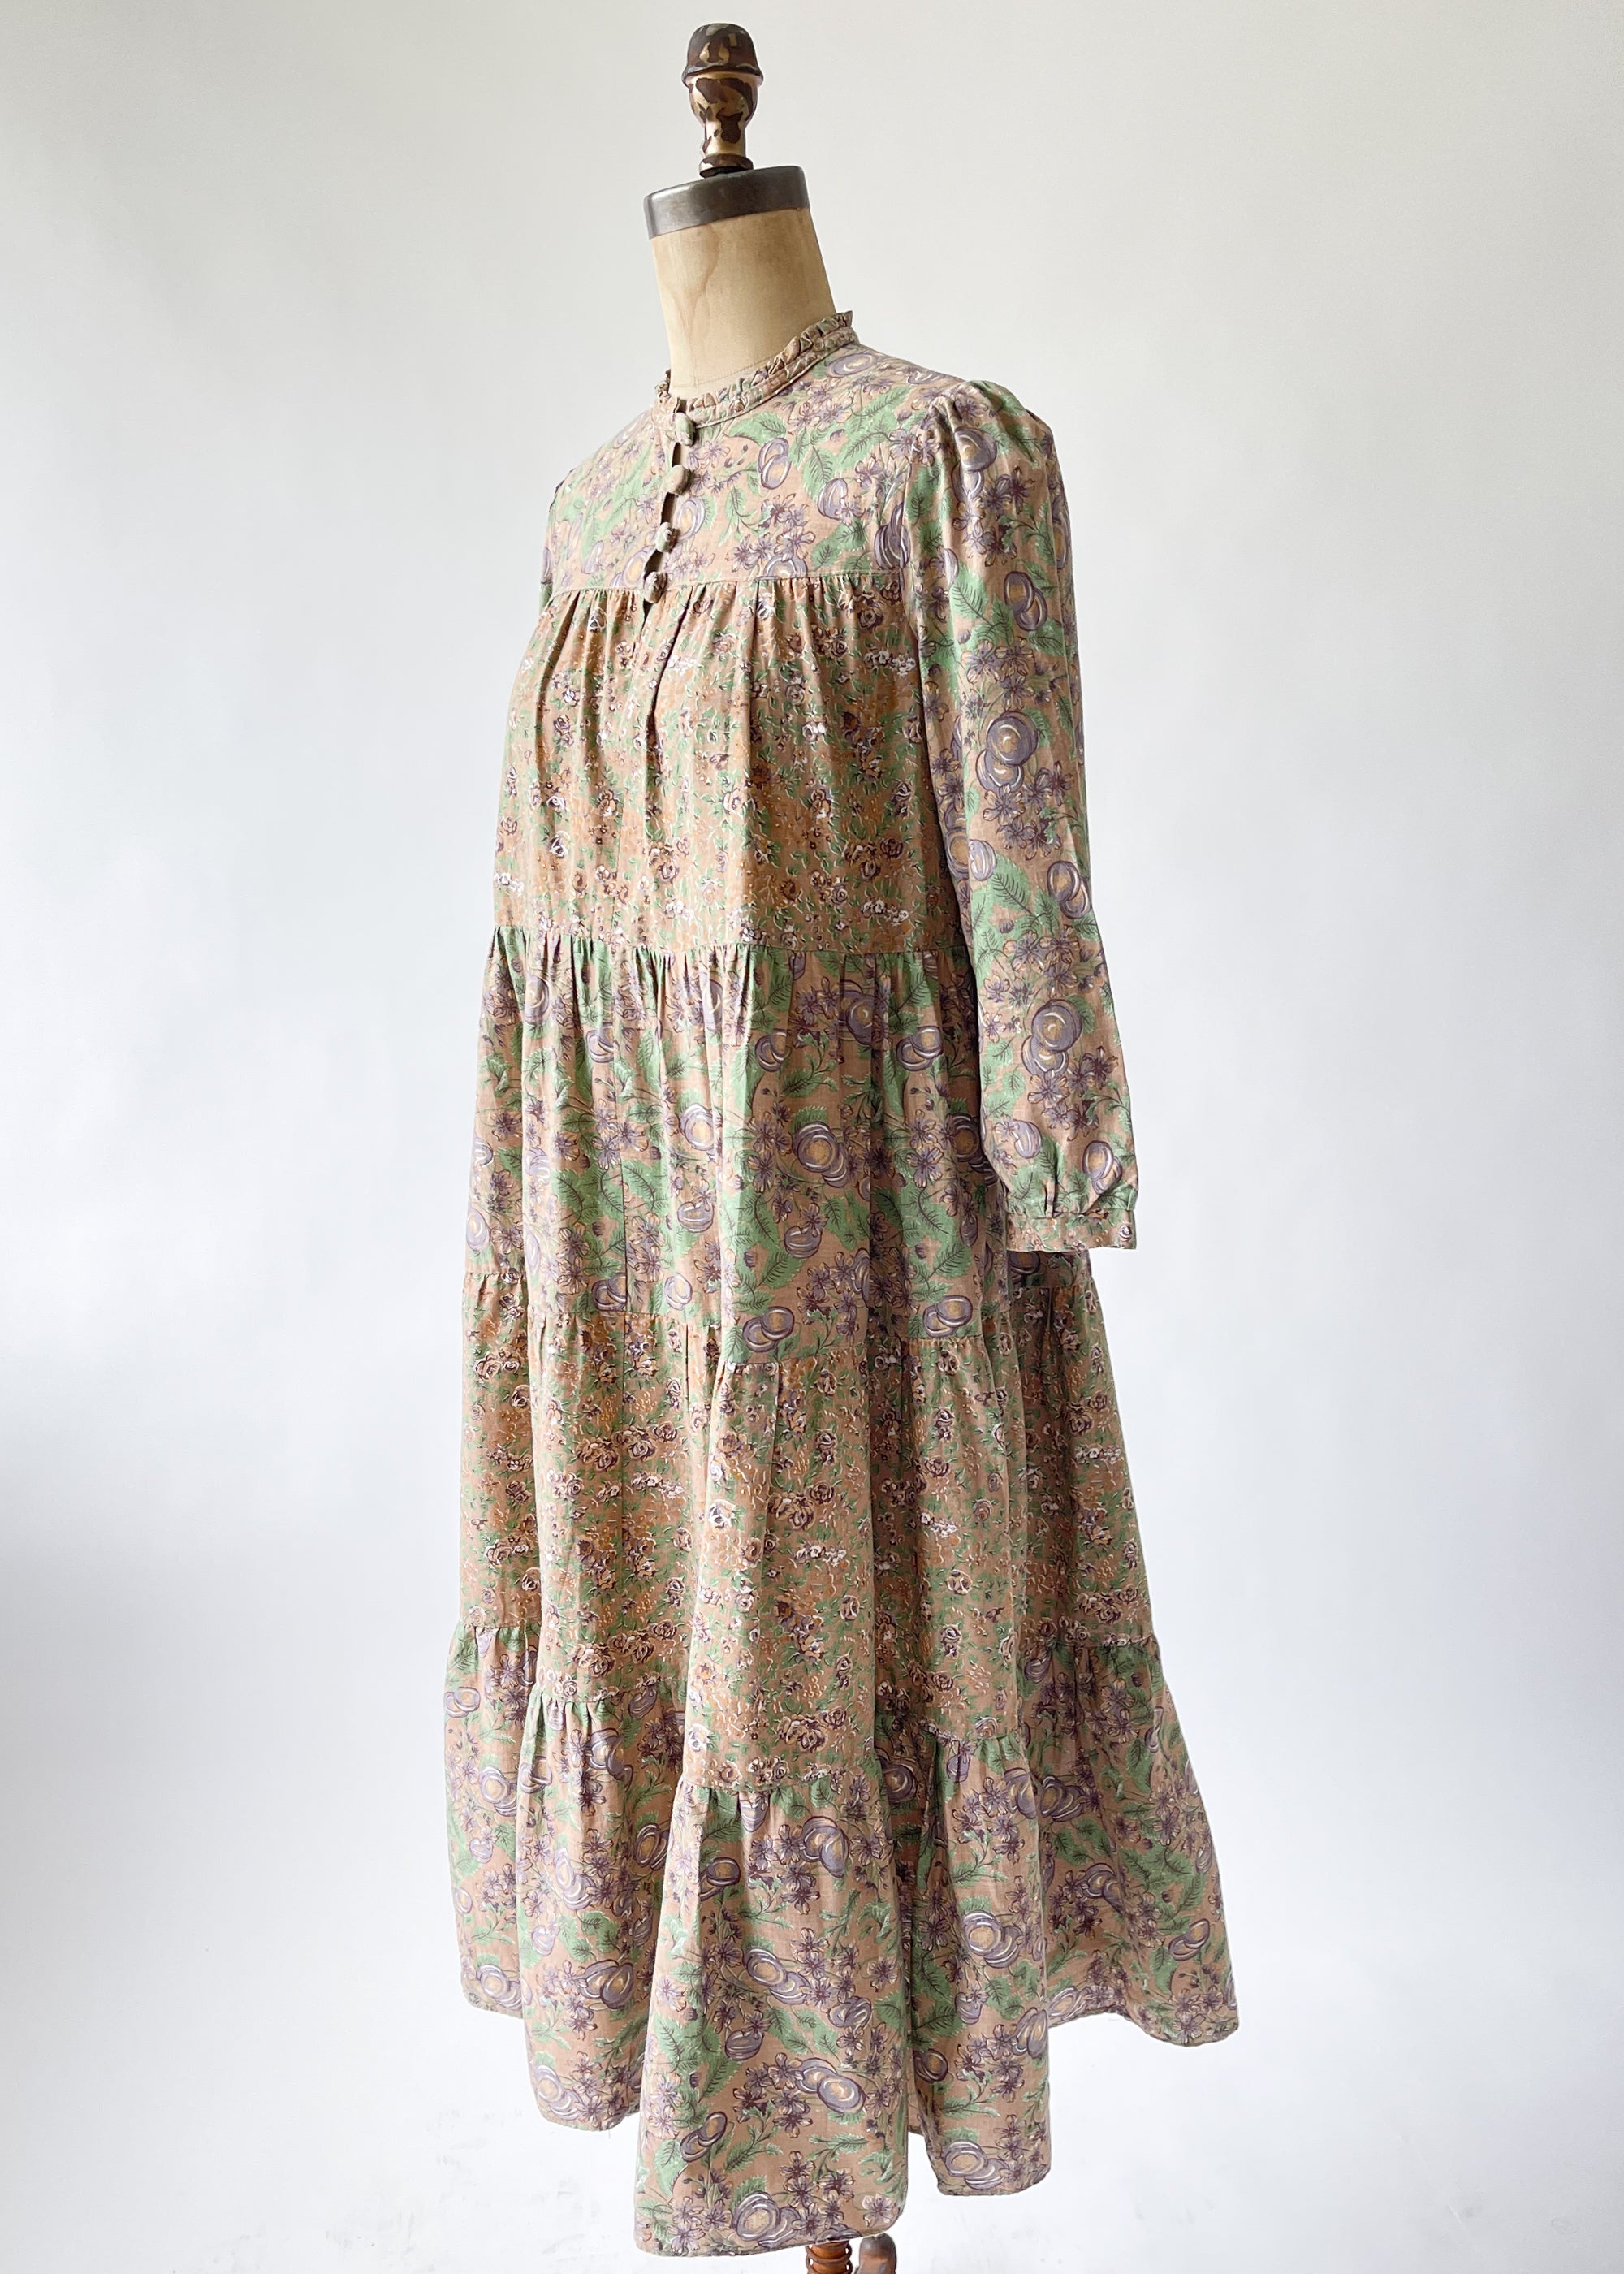 Vintage 1970s Floral Tiered Dress - Raleigh Vintage